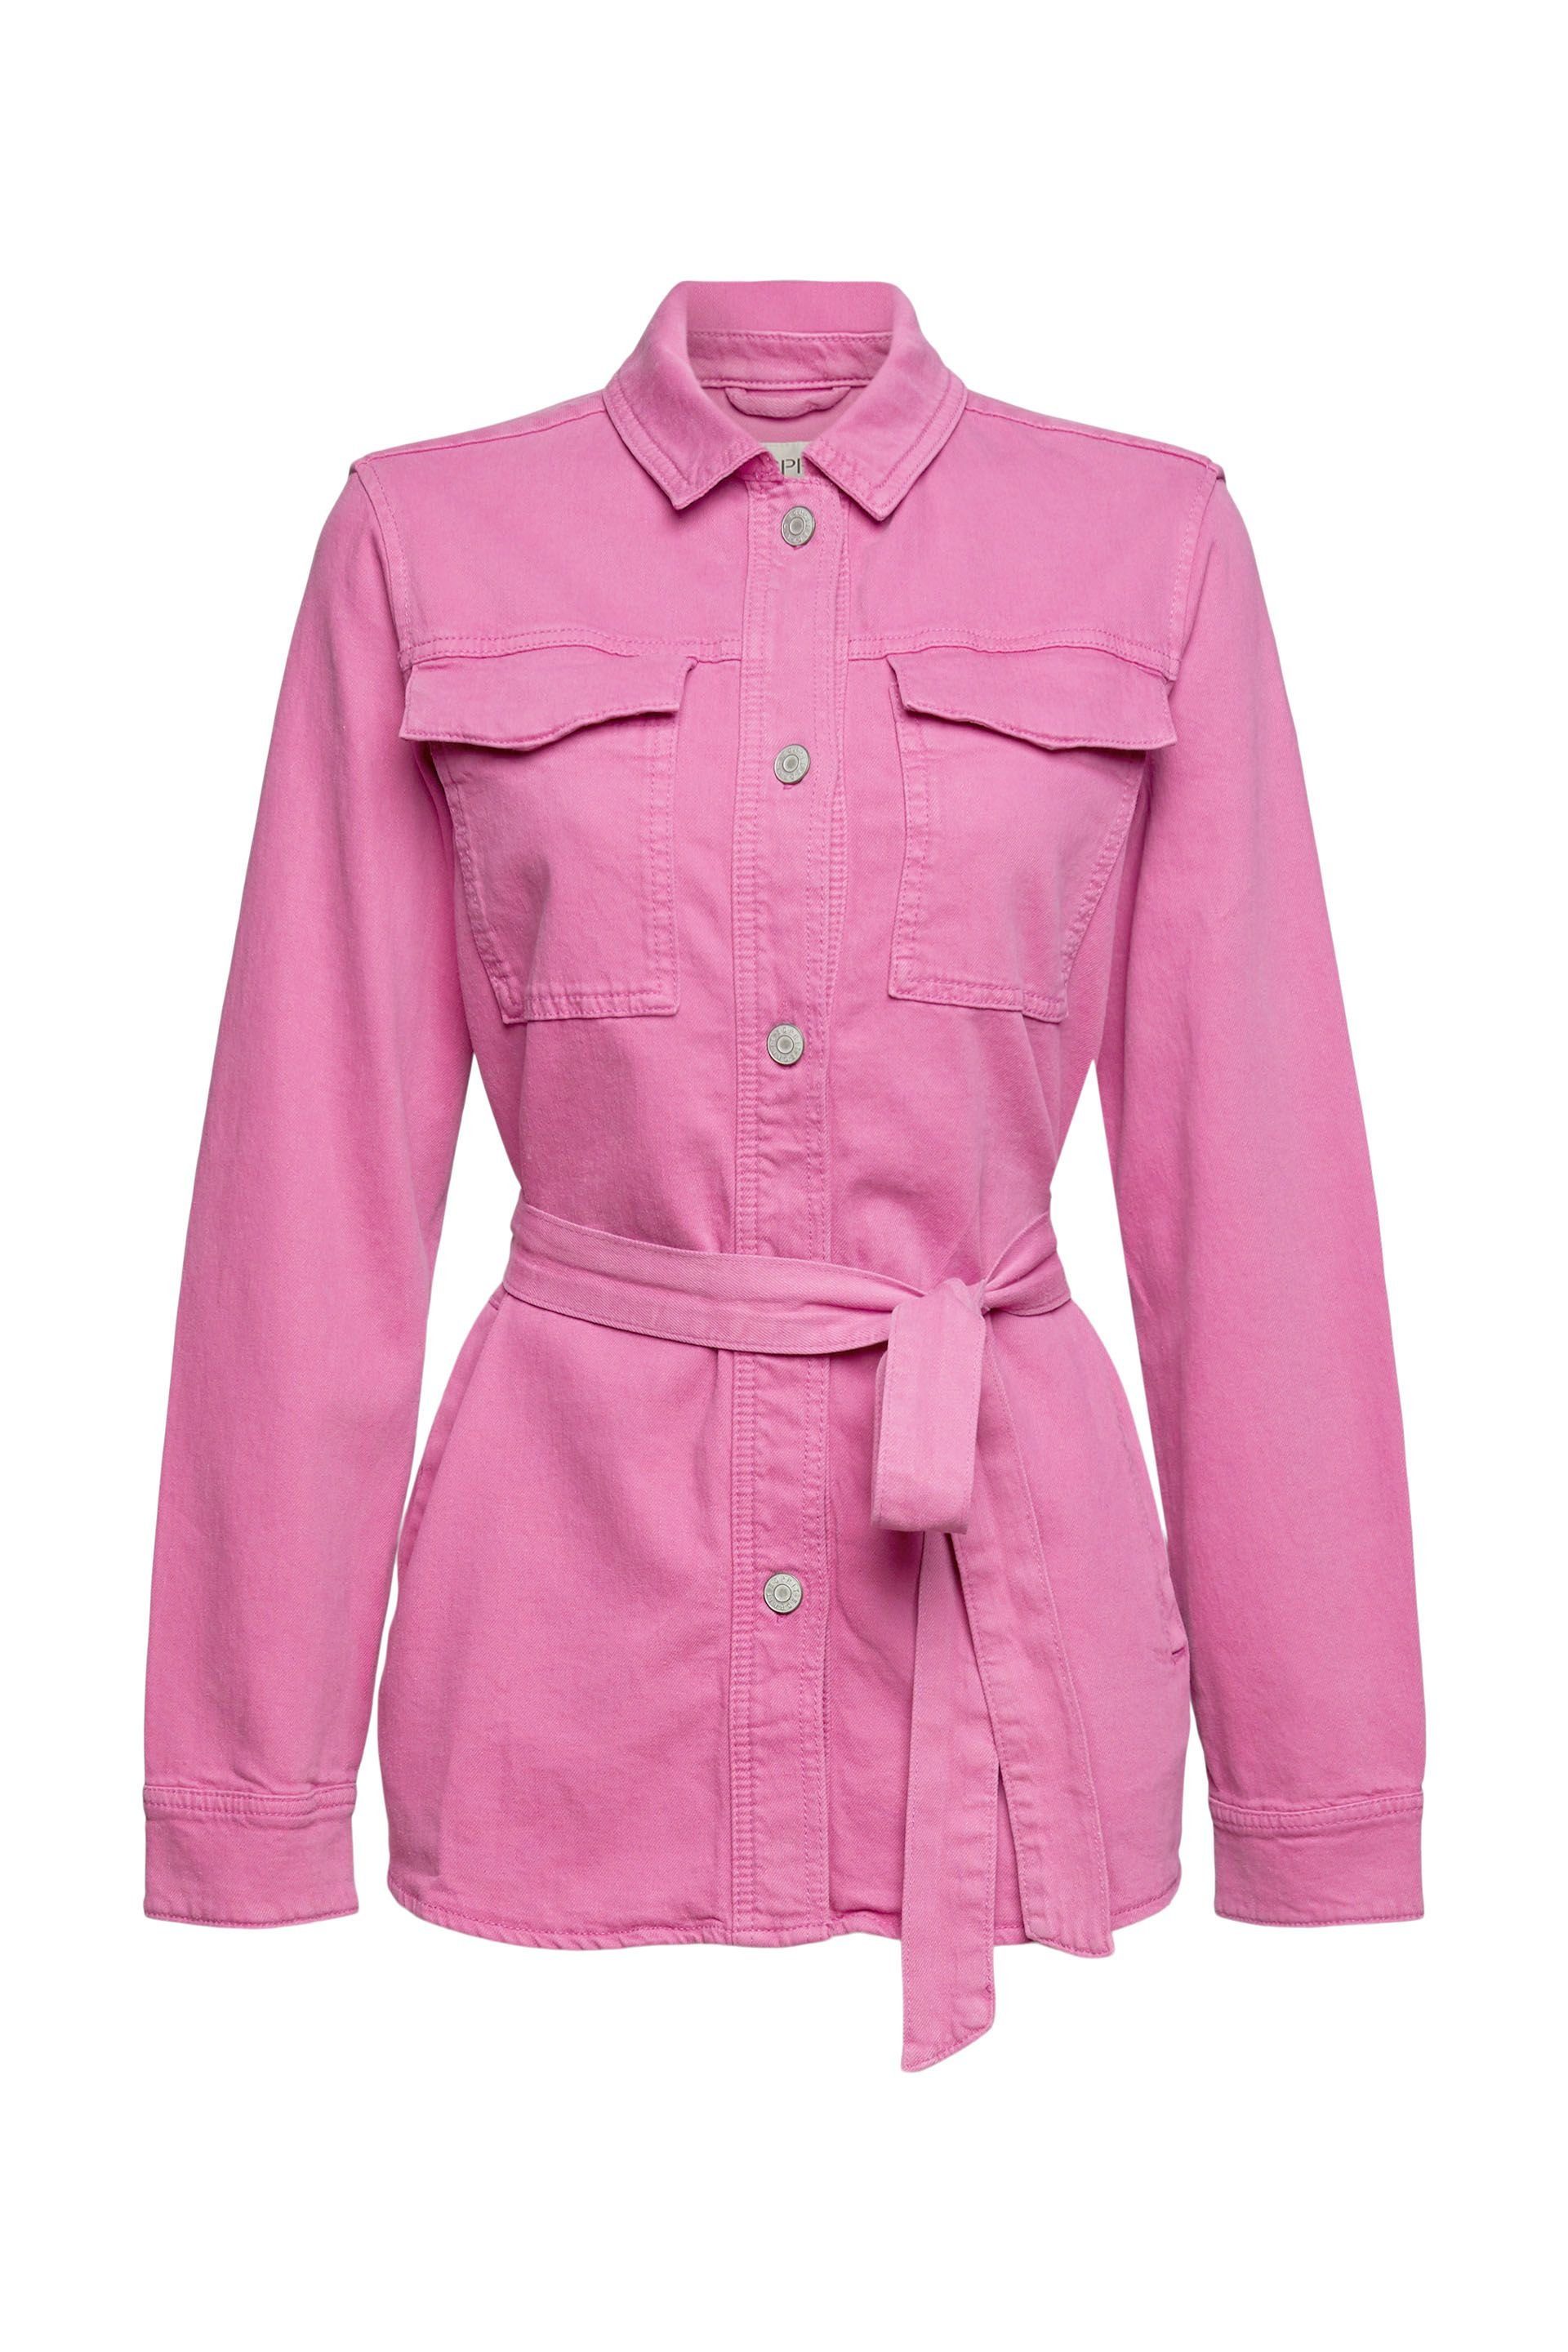 Esprit Allwetterjacke leichte Jacke mit Bindegürtel pink fuchsia